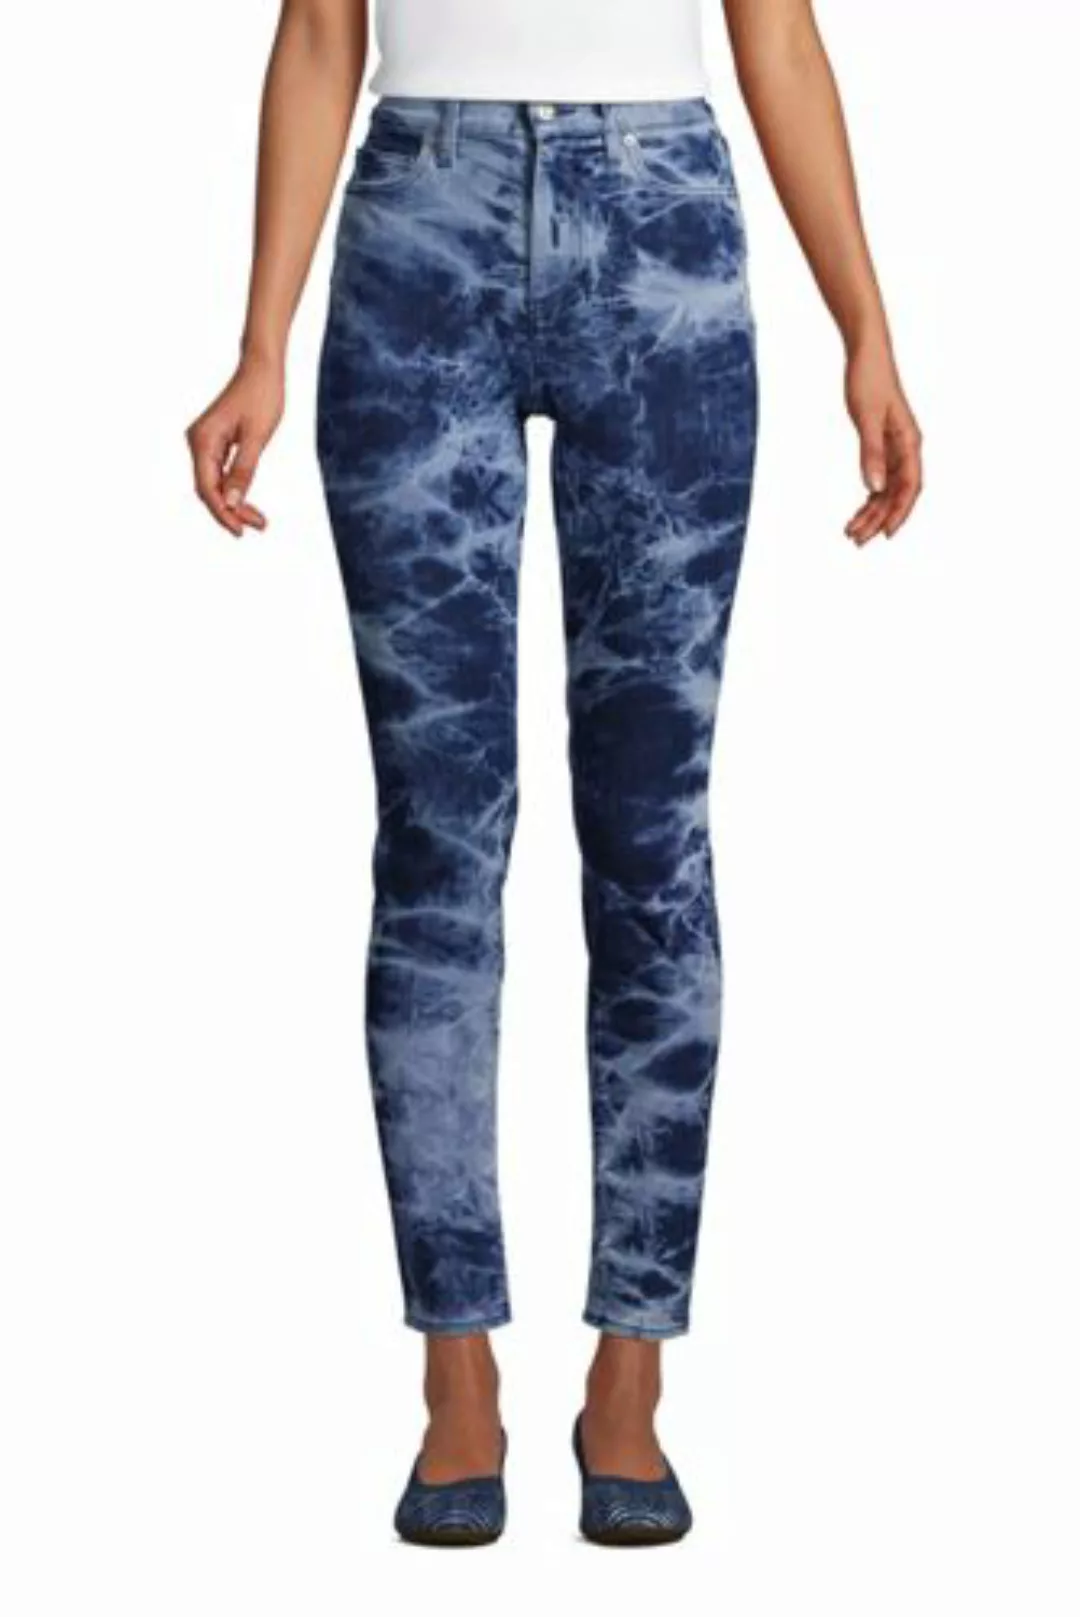 Slim Fit Öko Jeans High Waist, Damen, Größe: XS Normal, Blau, Elasthan, by günstig online kaufen